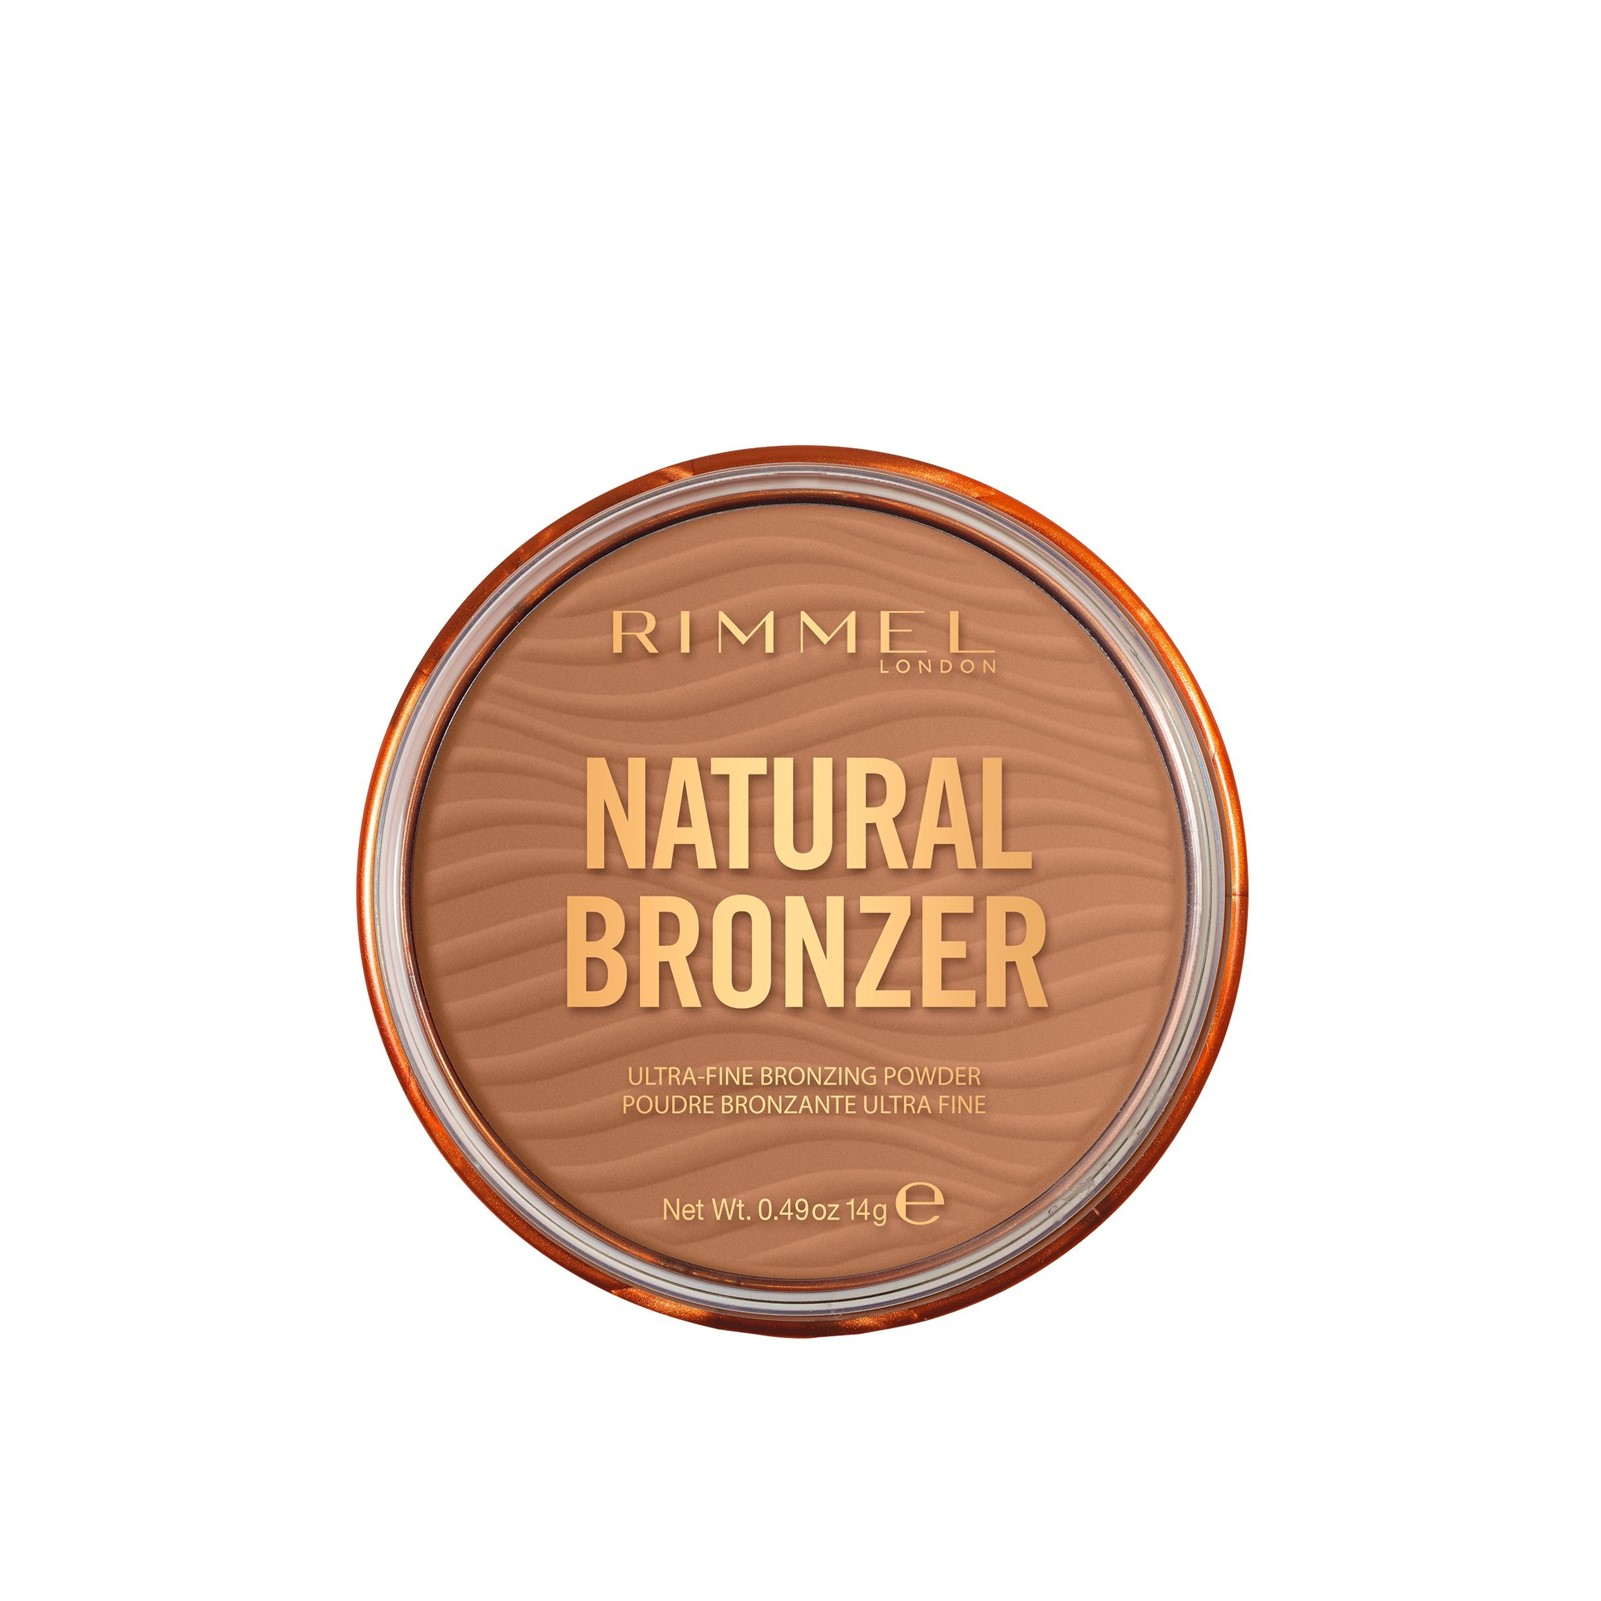 Bebrejde Imponerende spild væk Buy Rimmel London Natural Bronzer Waterproof Bronzing Powder SPF15 002 14g  (0.49oz) · USA